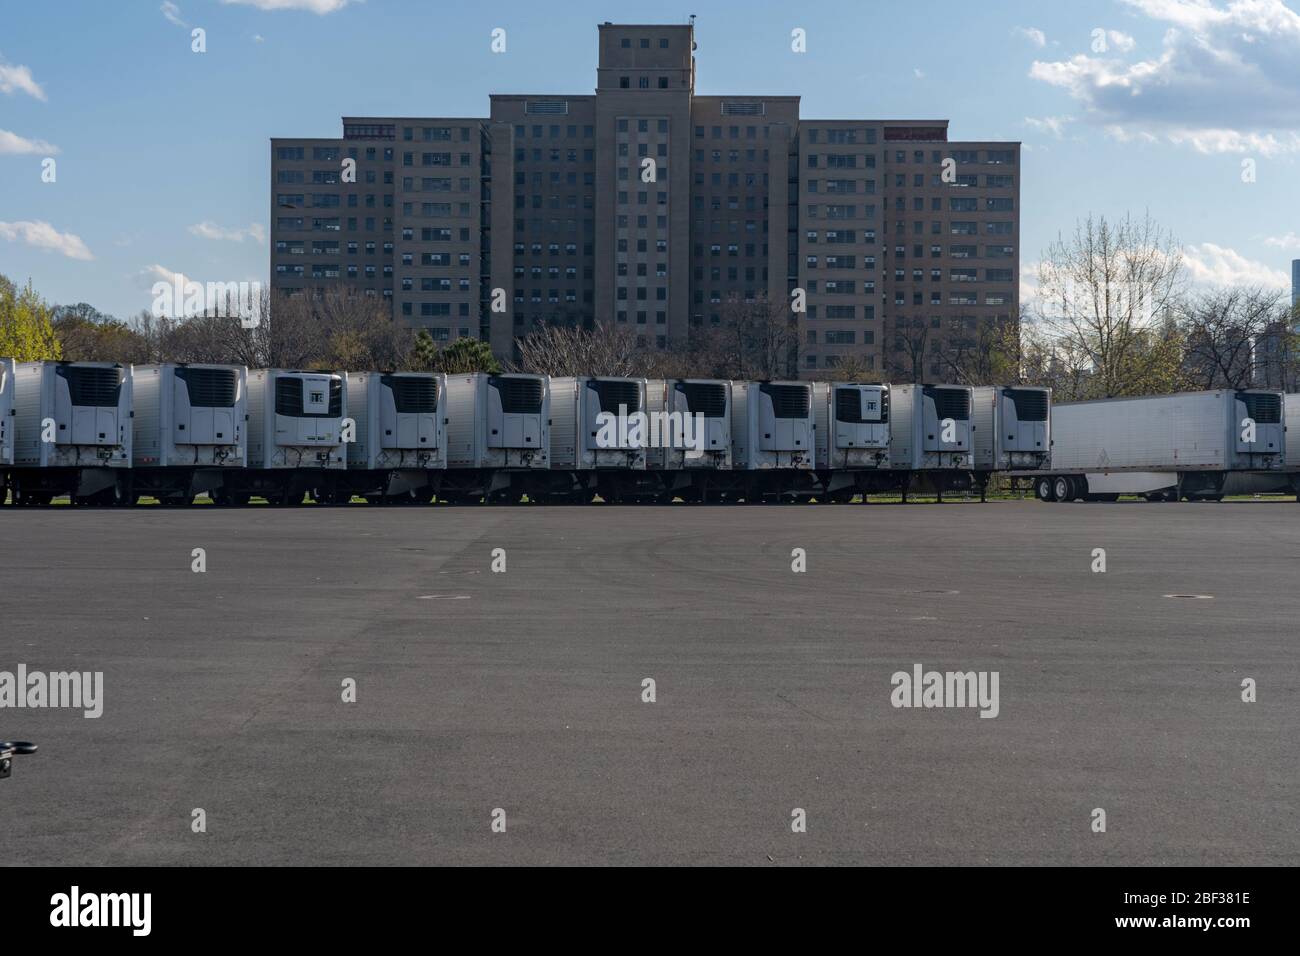 NEW YORK, États-Unis - 15 AVRIL: La photo montre que de nouvelles morgues de conteneurs sont en préparation pour les victimes de coronavirus (COVID-19) qui seront livrées aux hôpitaux le Banque D'Images